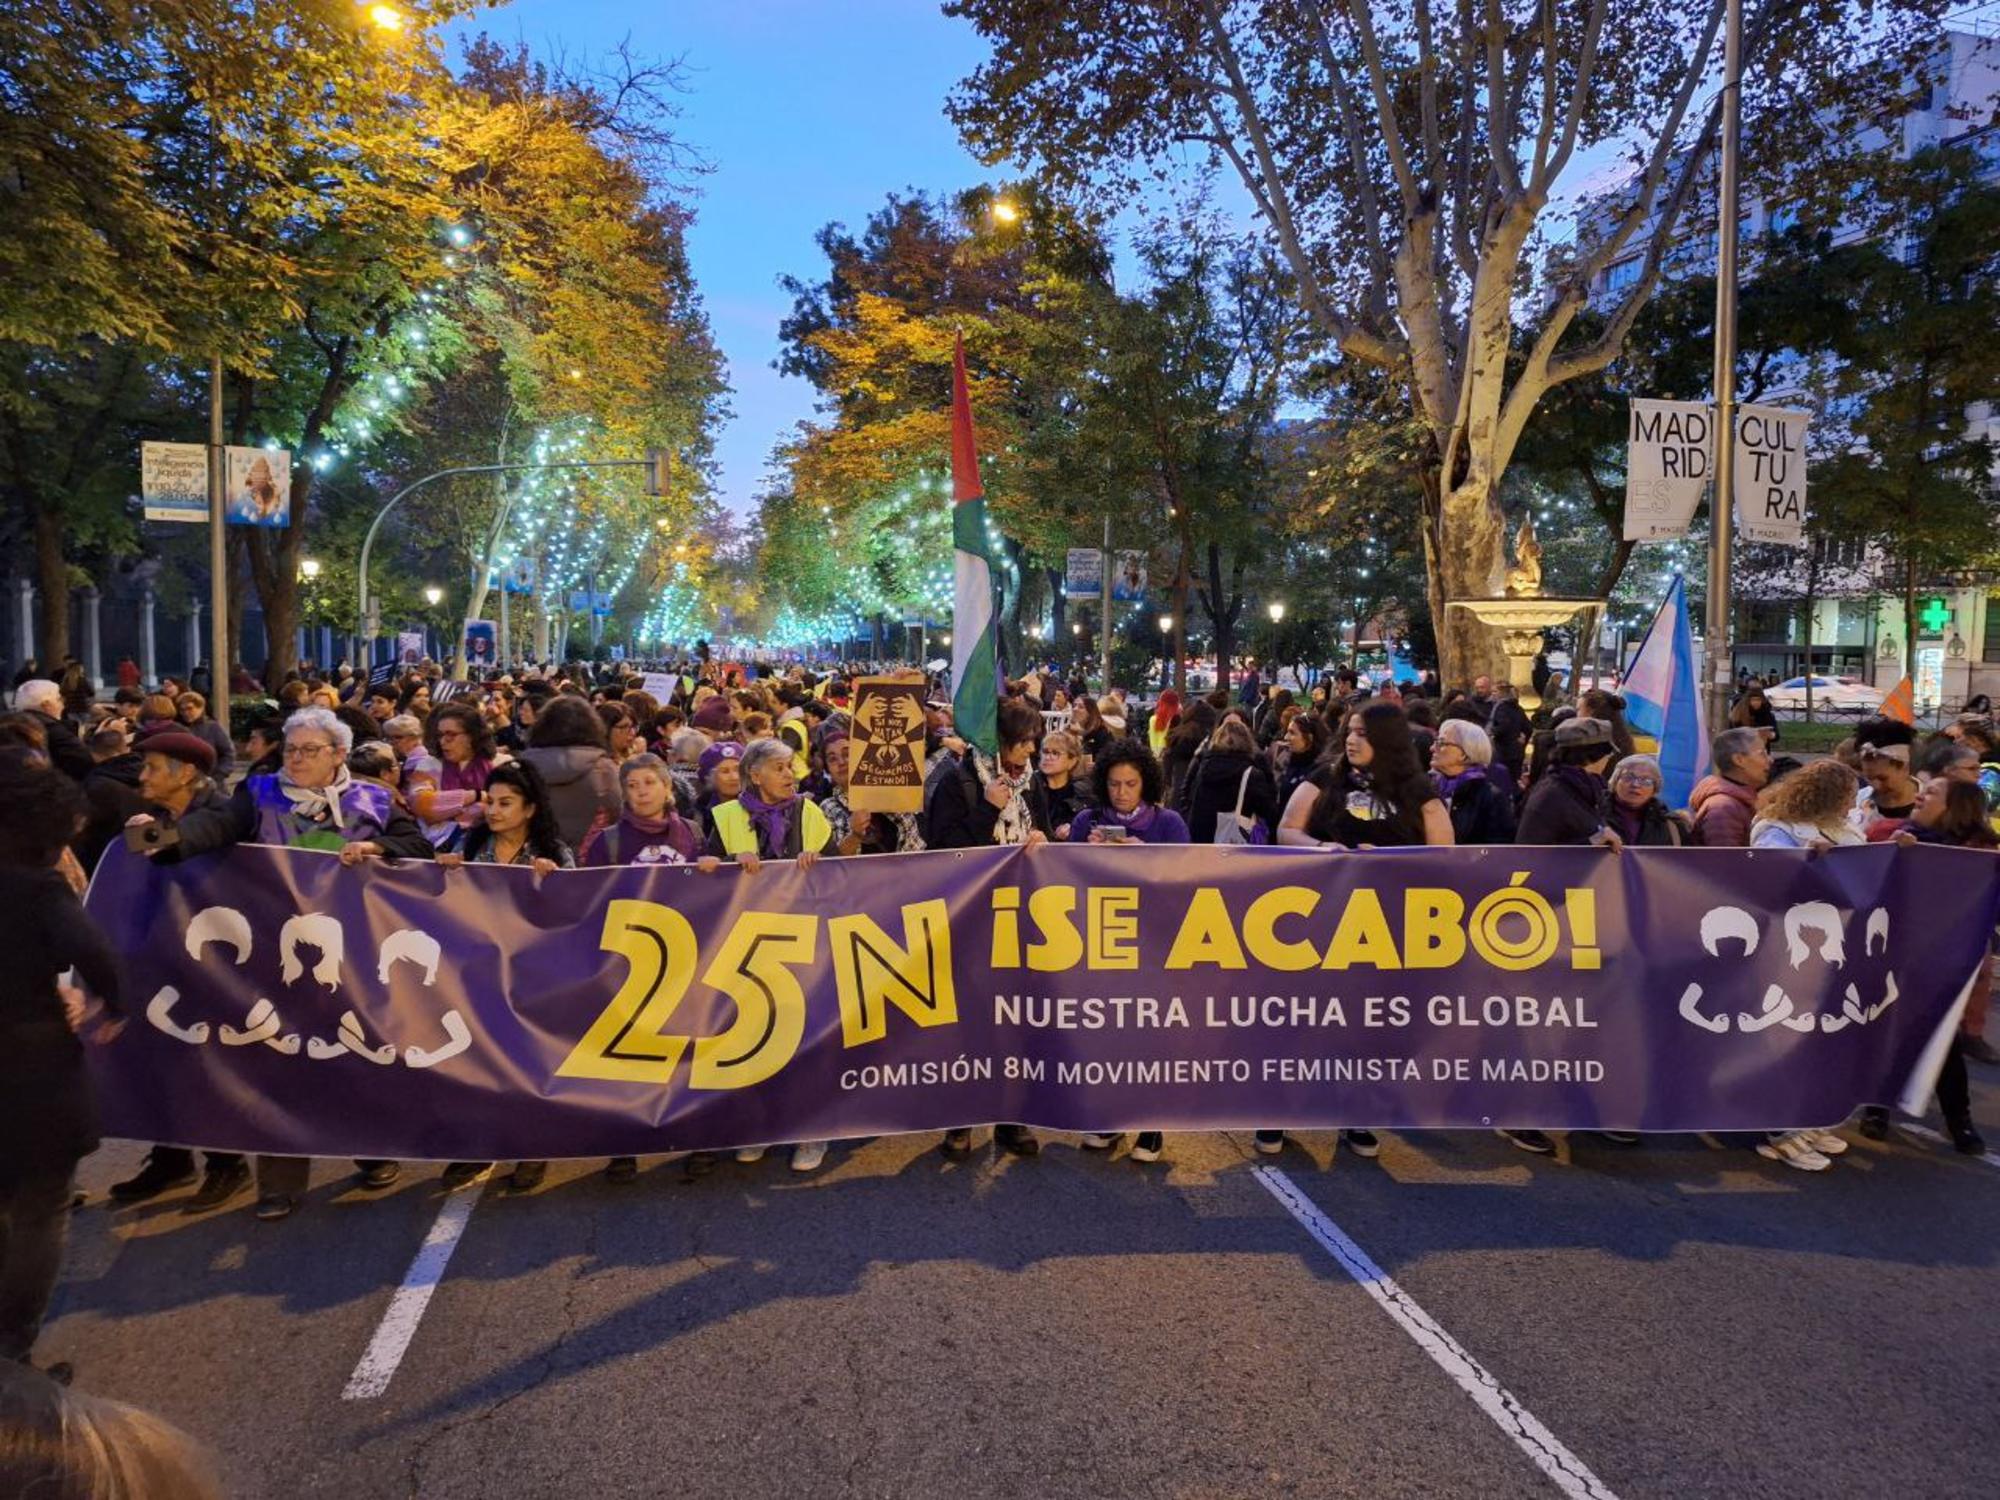 Cabecera de la manifestación #Se Acabo a punto de partir de Atocha, Madrid.